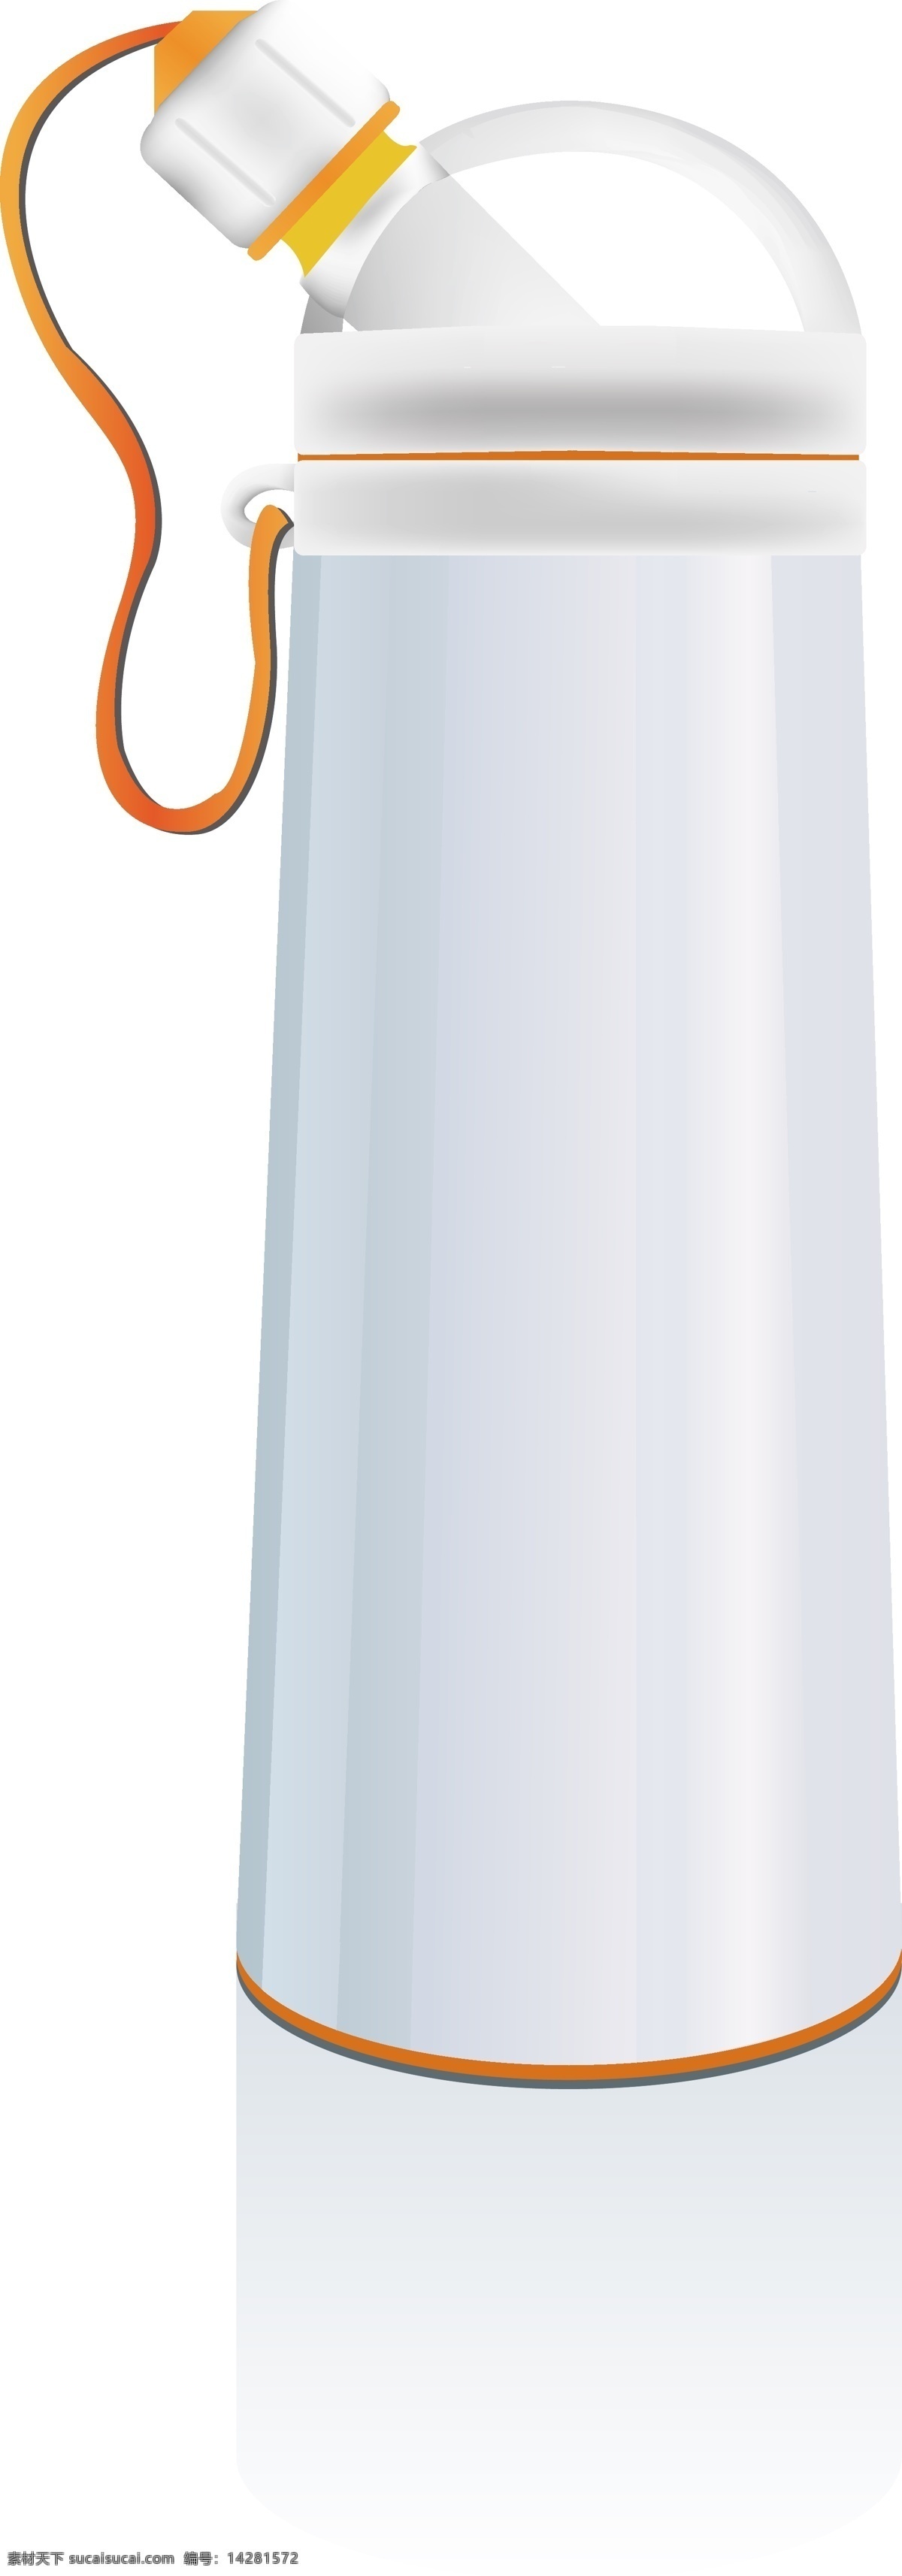 杯 杯子 空白 立体 三维 生活百科 生活用品 鼠绘 水杯 矢量 太空杯 模板下载 收回 水壶 矢量图 日常生活